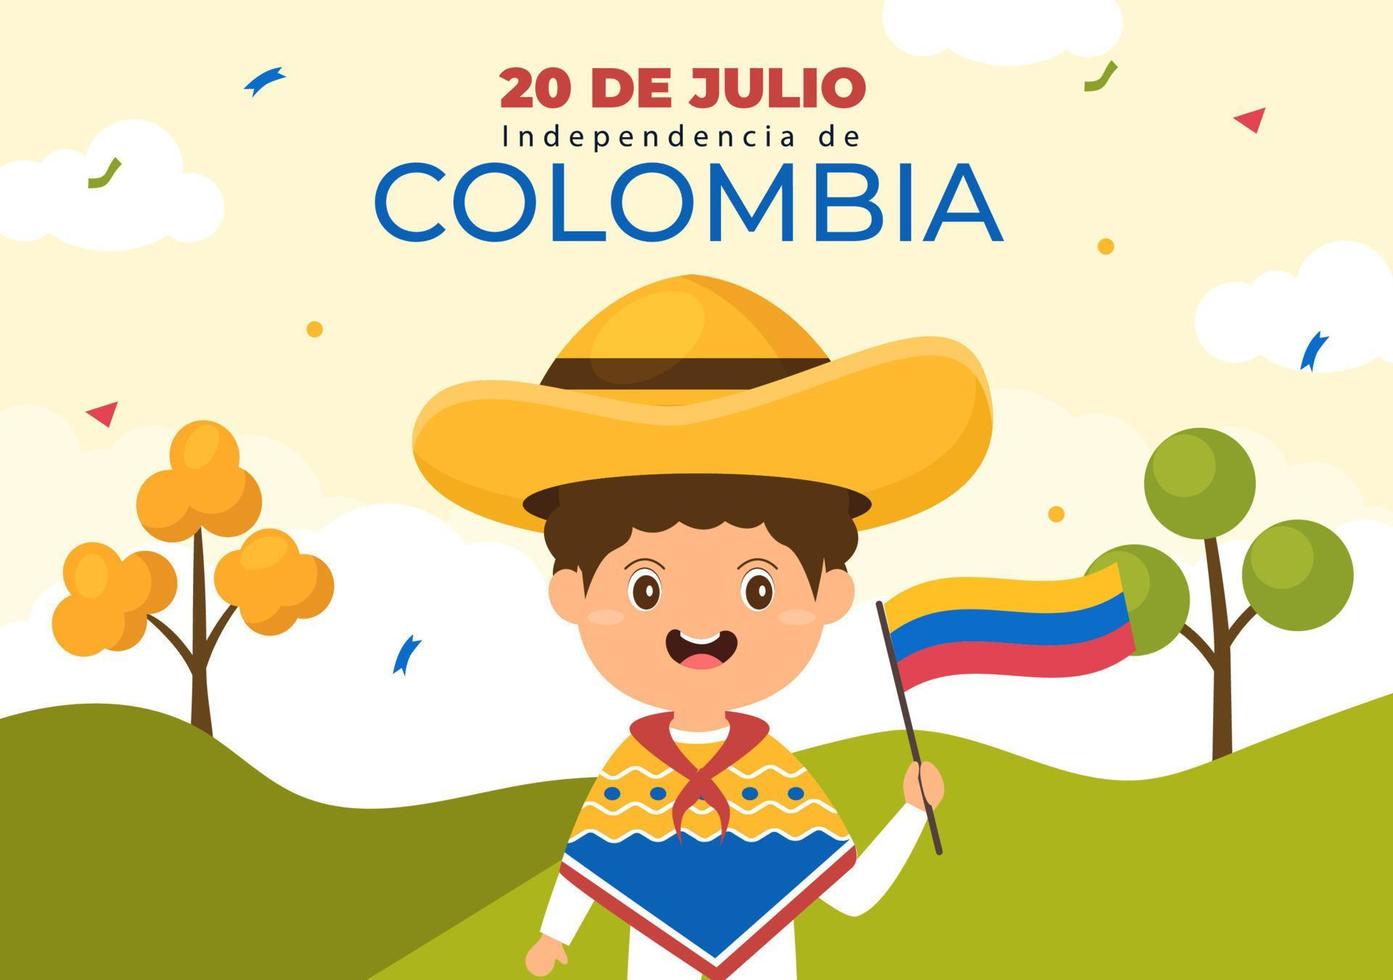 20 julio independencia de colombia tecknad illustration med flaggor, ballonger och söta barnfigurer för affischdesign vektor